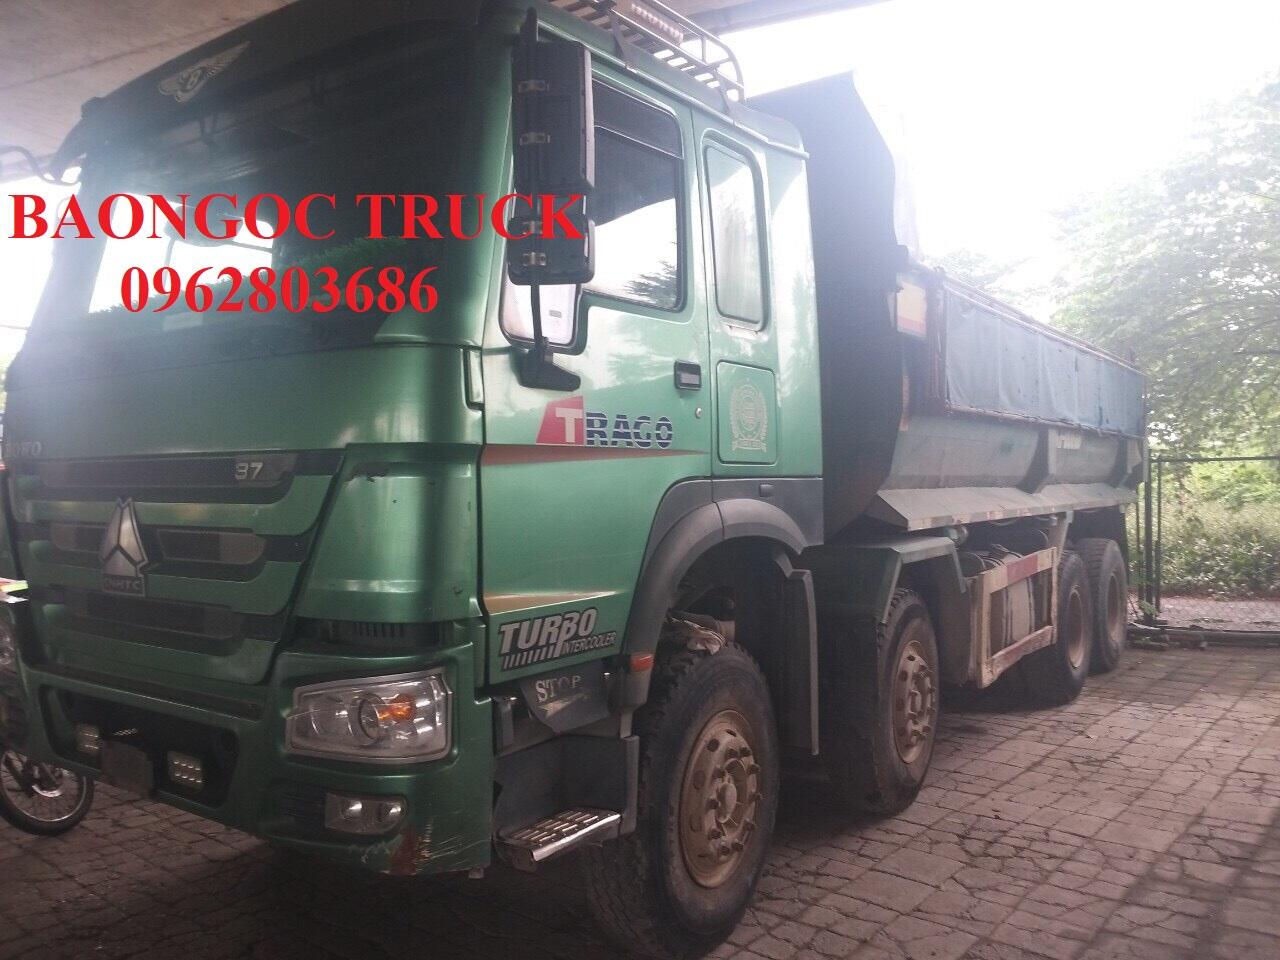 Dongfeng 4 chân cũ 18 tấn thùng dài xe tải Hoàng Huy đã qua sử dụng